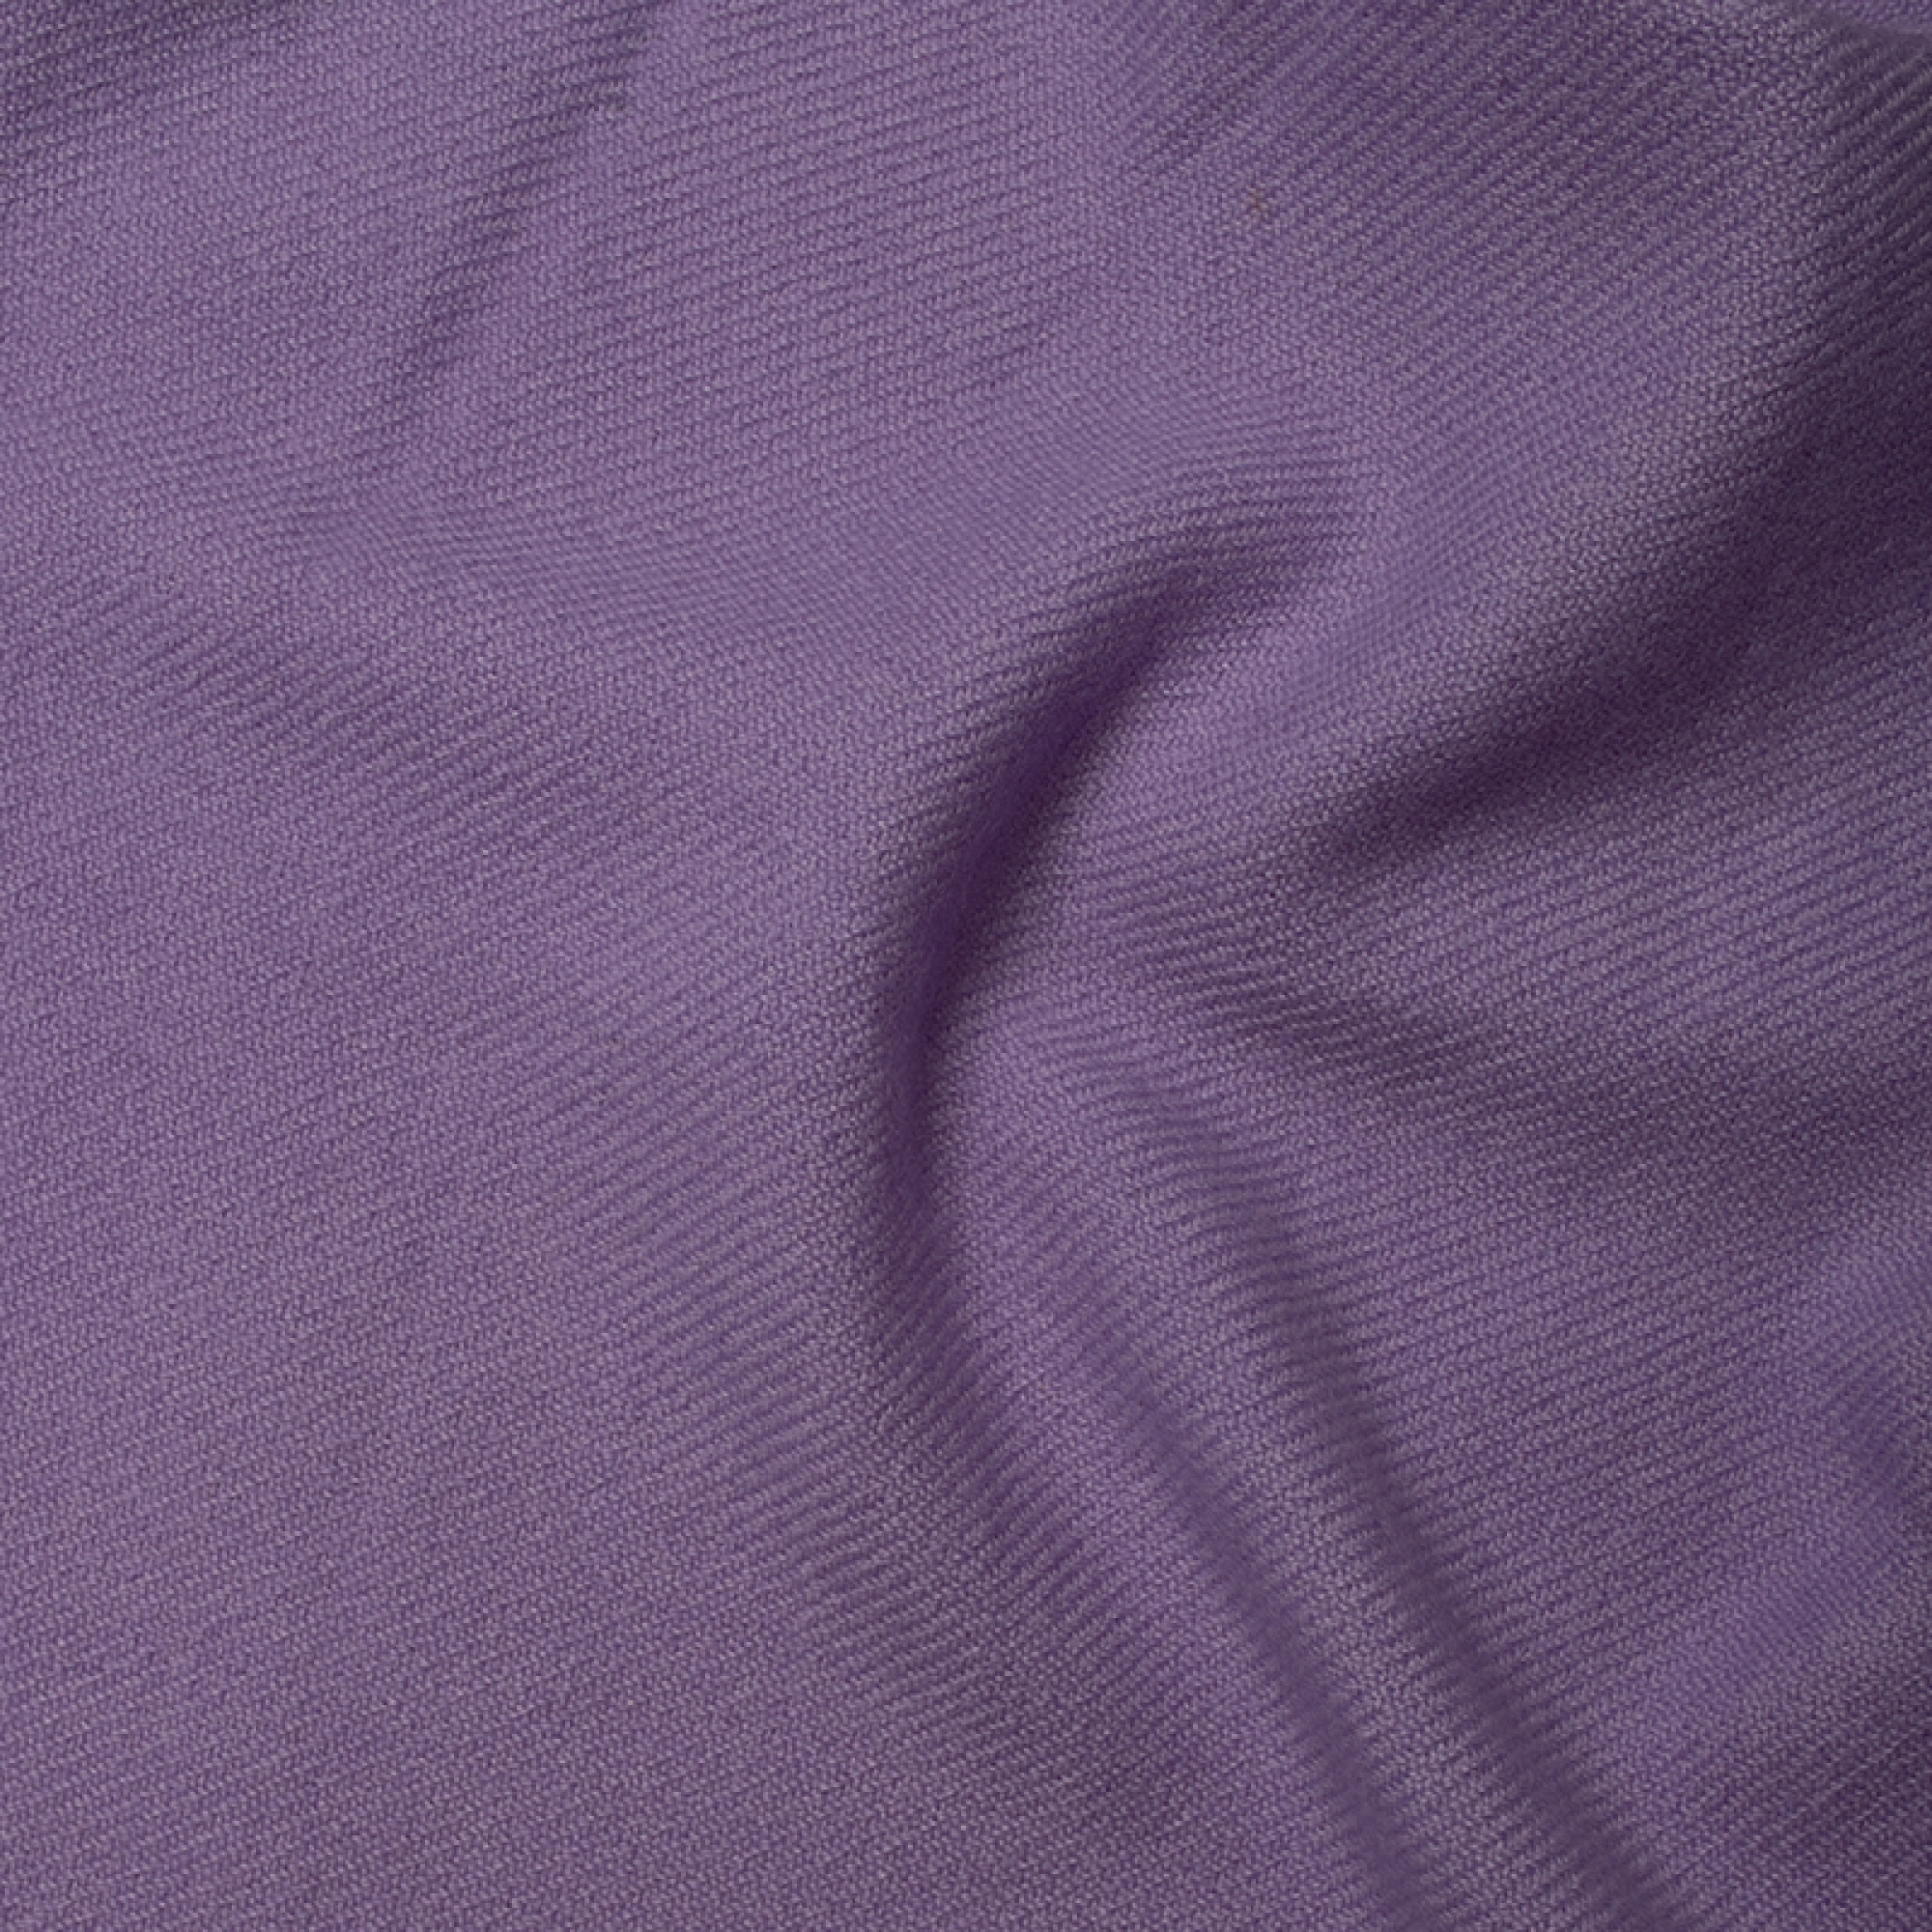 Cachemire accessoires couvertures plaids frisbi 147 x 203 lavande ensoleillee 147 x 203 cm